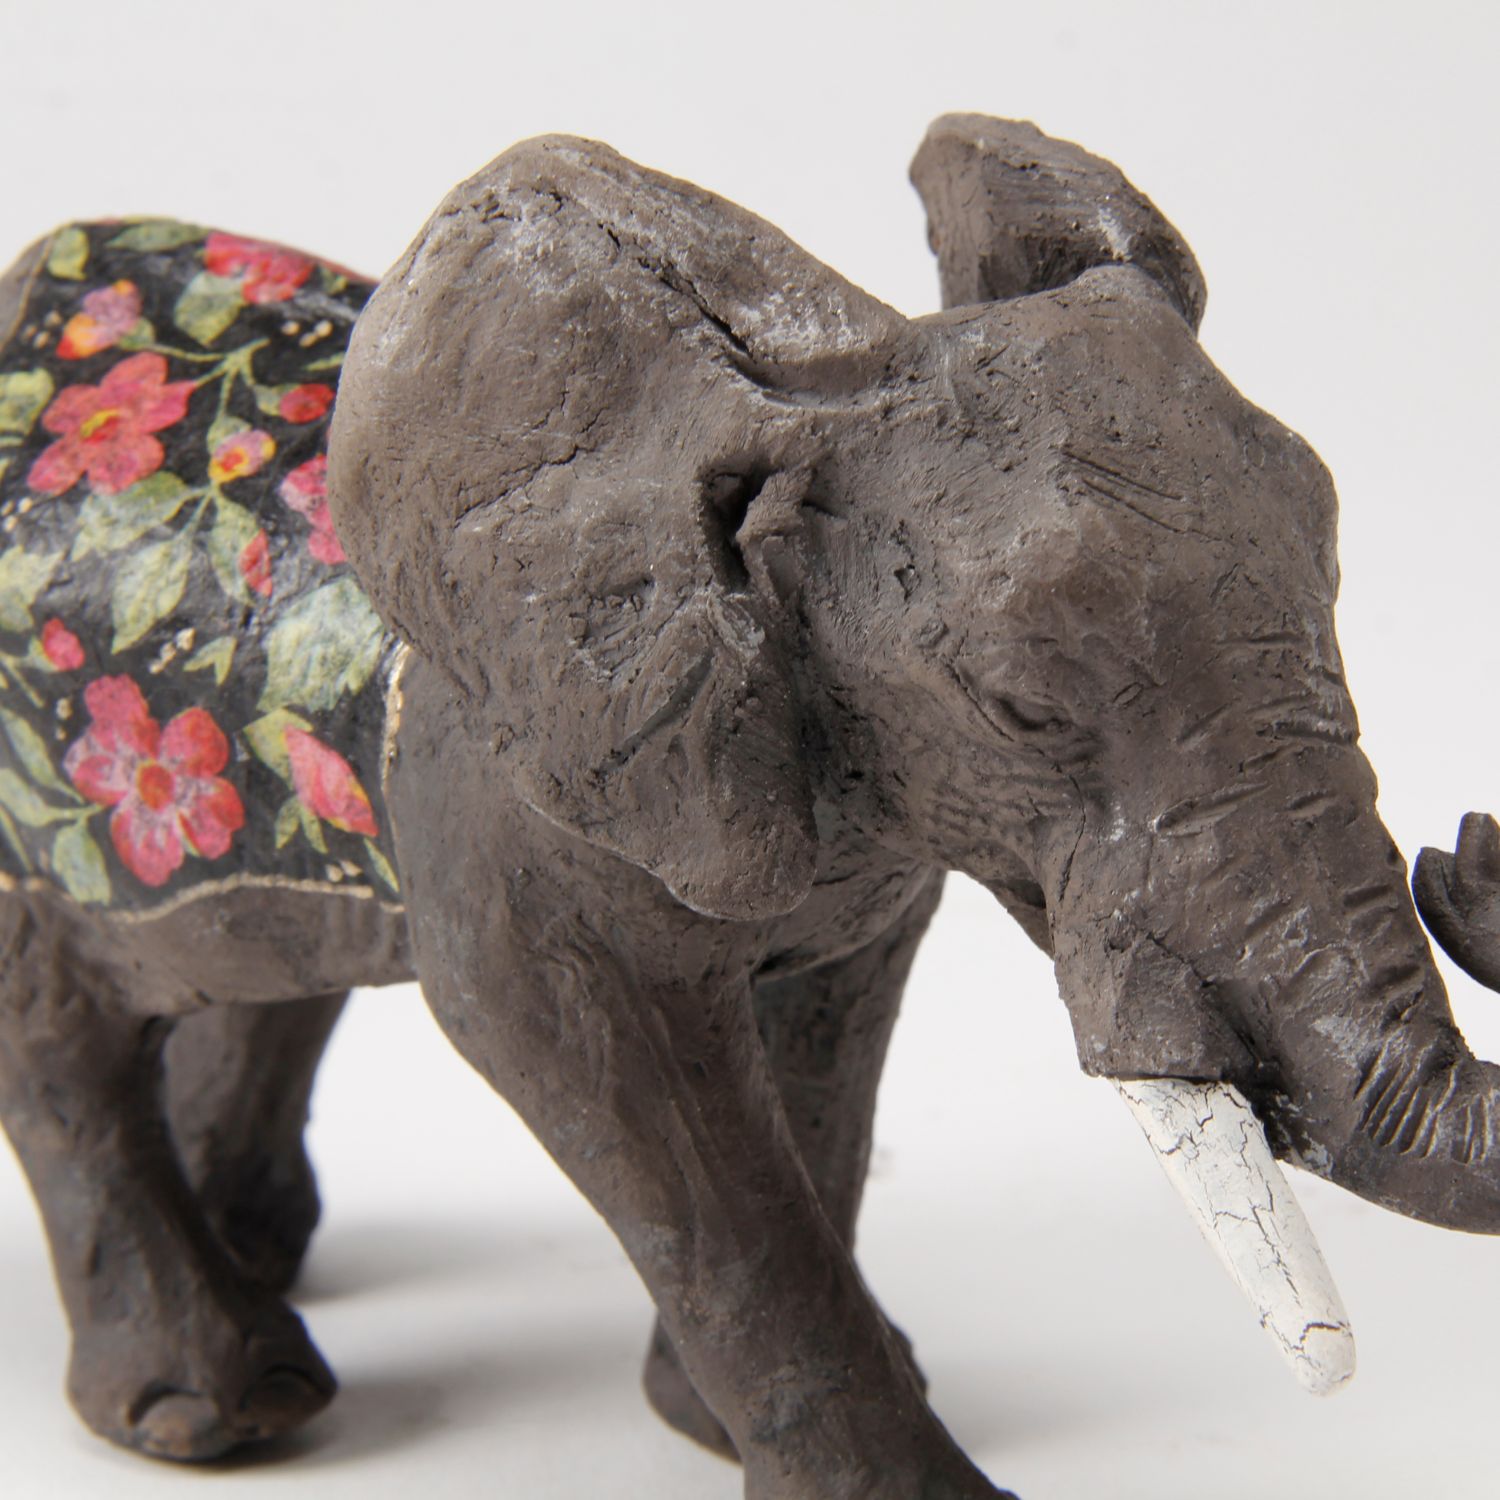 Zsuzsa Monostory: Elephant Product Image 2 of 3